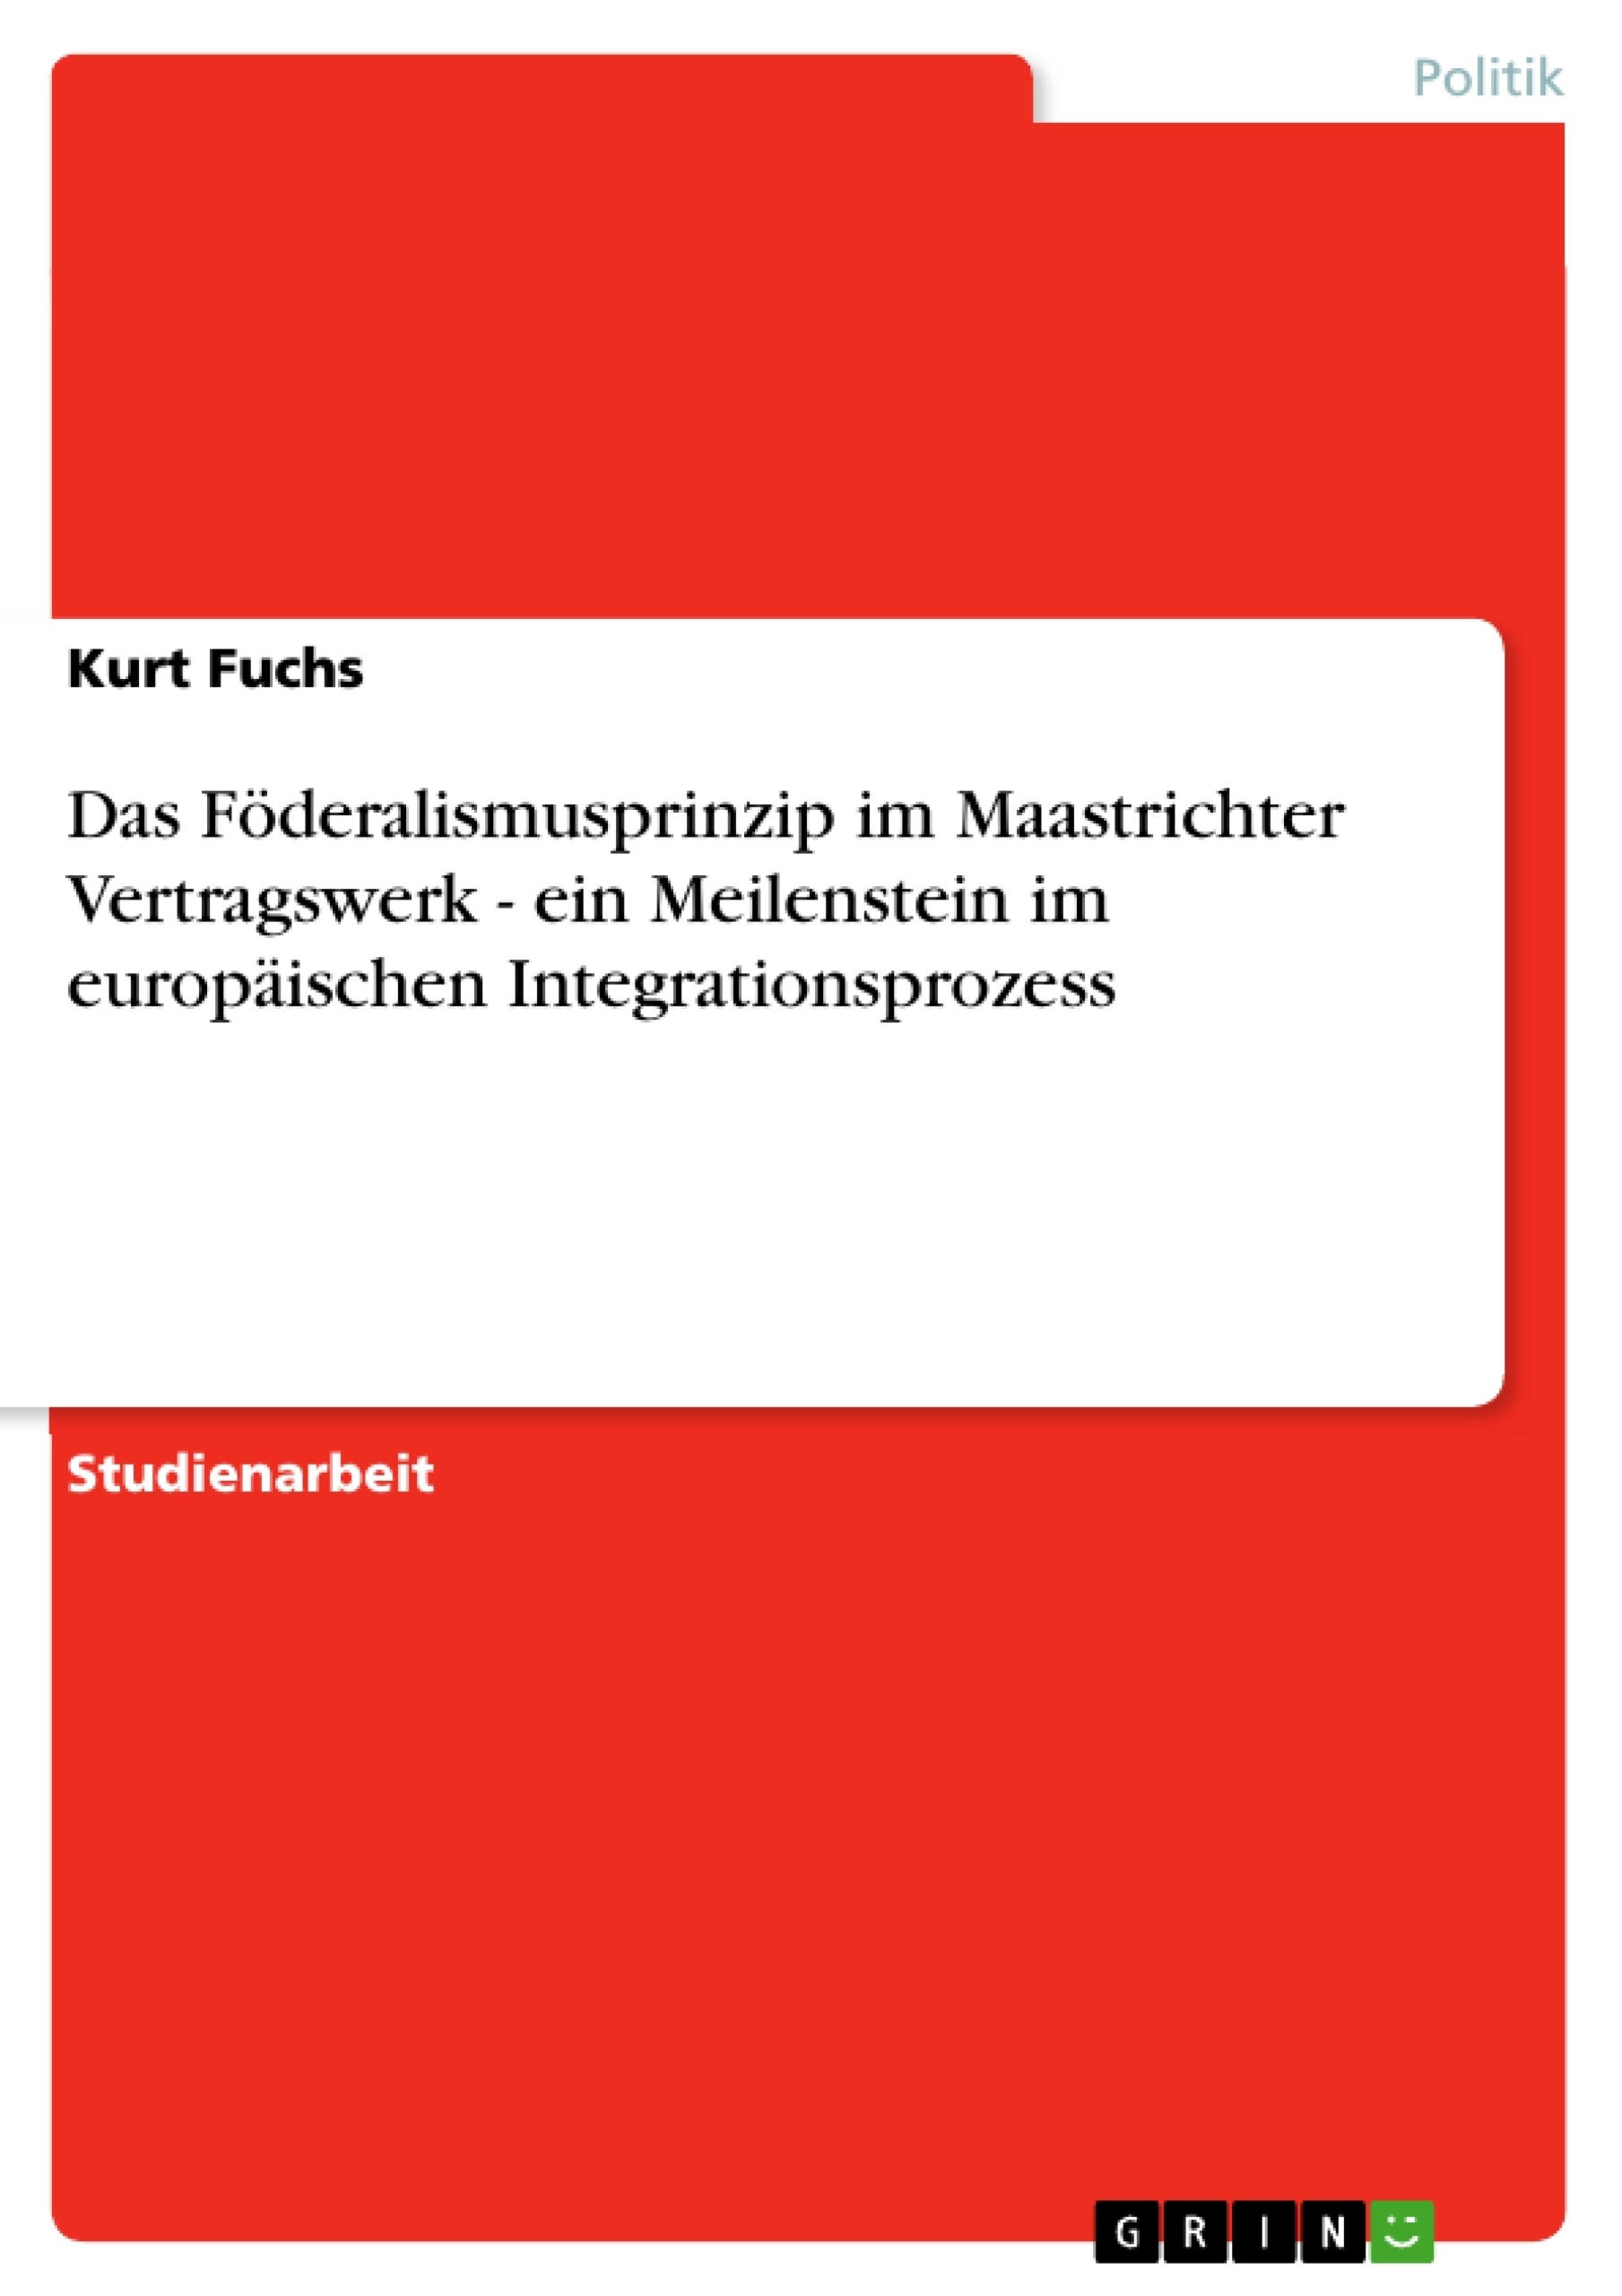 Title: Das Föderalismusprinzip im Maastrichter Vertragswerk - ein Meilenstein im europäischen Integrationsprozess